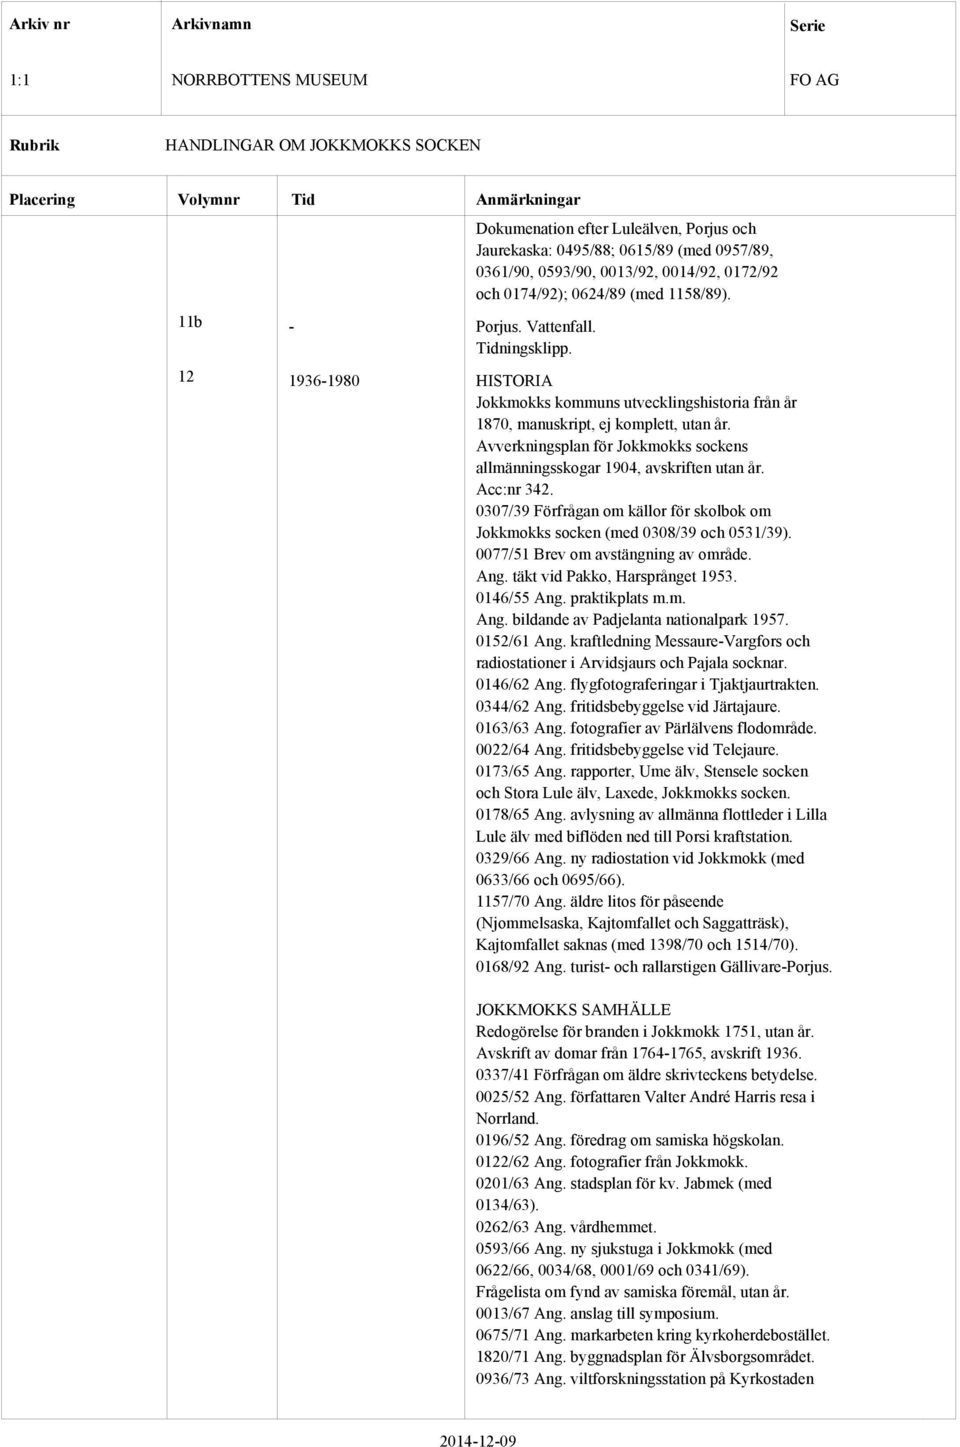 Avverkningsplan för Jokkmokks sockens allmänningsskogar 1904, avskriften utan år. Acc:nr 342. 0307/39 Förfrågan om källor för skolbok om Jokkmokks socken (med 0308/39 och 0531/39).